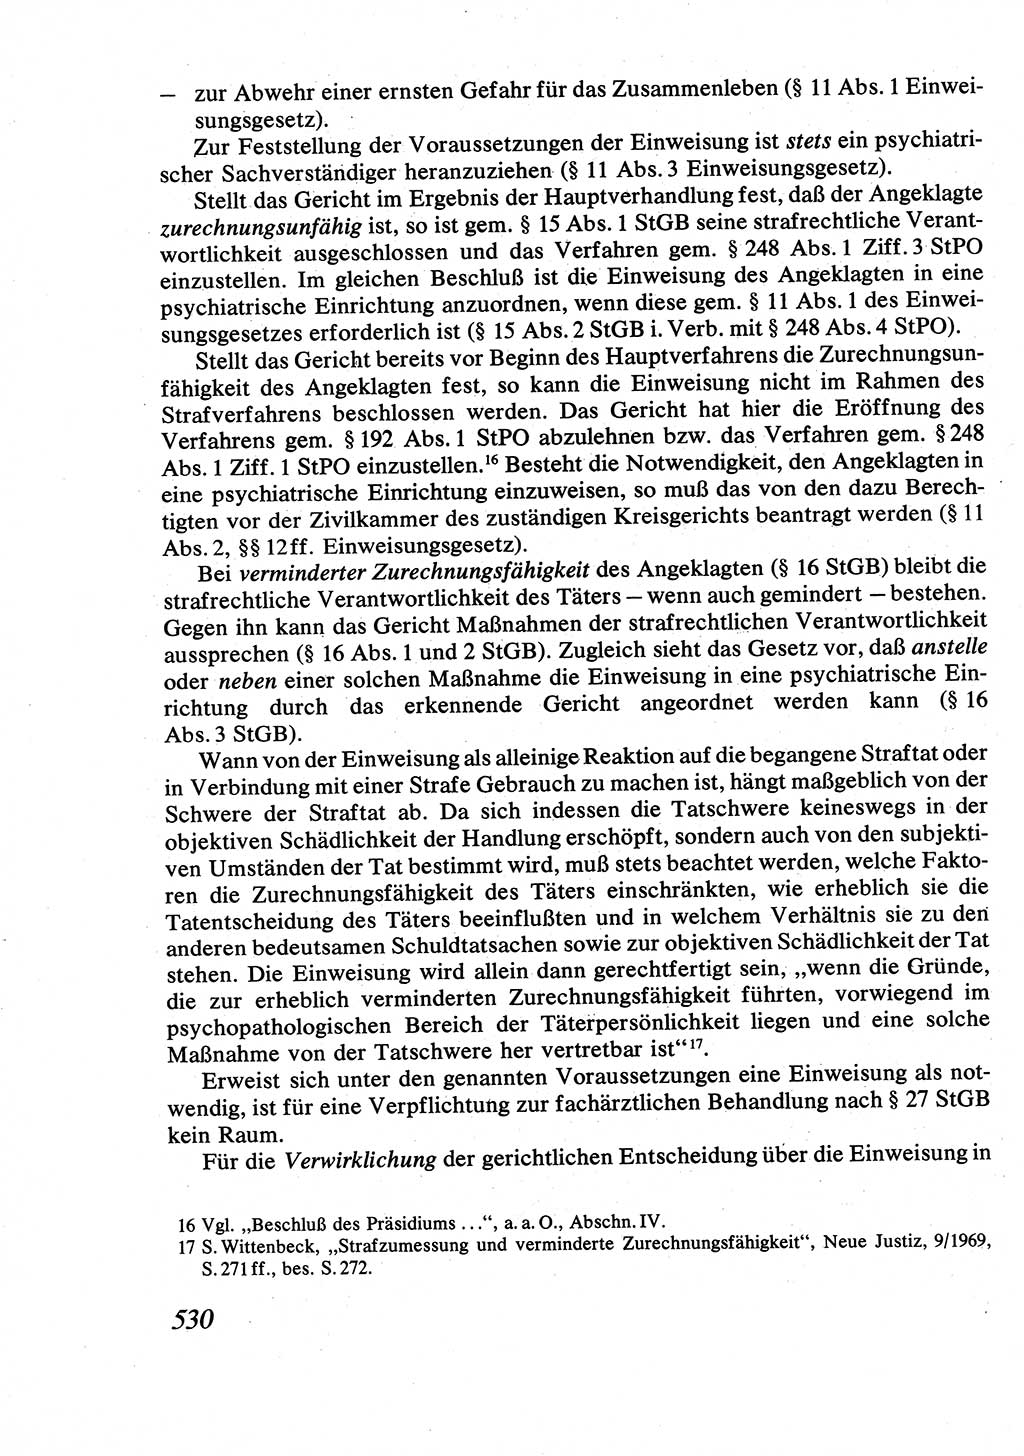 Strafrecht [Deutsche Demokratische Republik (DDR)], Allgemeiner Teil, Lehrbuch 1976, Seite 530 (Strafr. DDR AT Lb. 1976, S. 530)